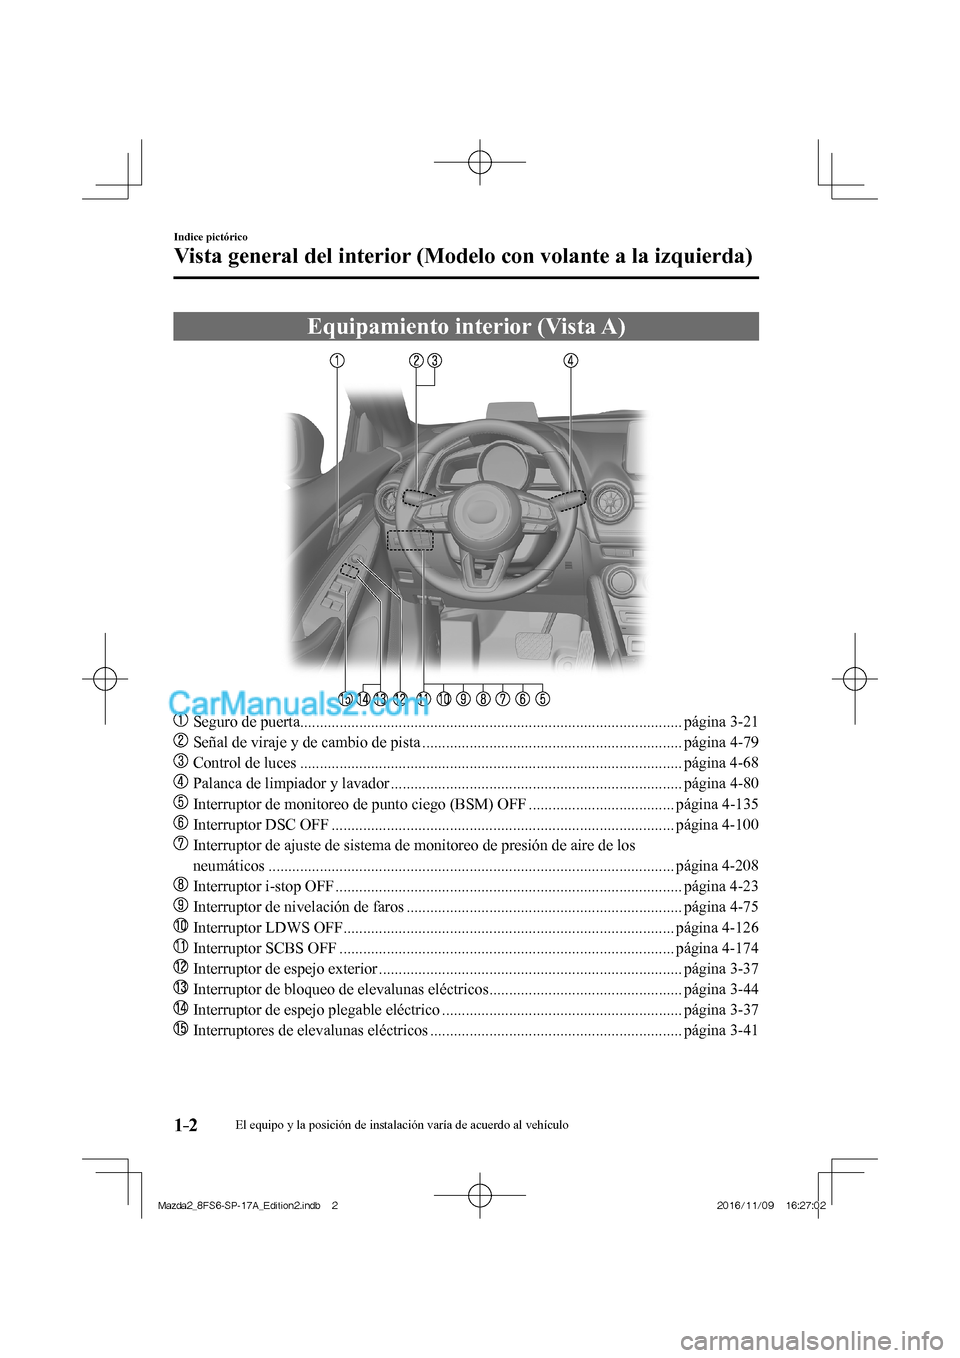 MAZDA MODEL 2 2018  Manual del propietario (in Spanish) 1–2
Indice pictórico
Vista general del interior (Modelo con volante a la izquierda)
      Equipamiento  interior  (Vista  A)
    
���
  Seguro de puerta..........................................